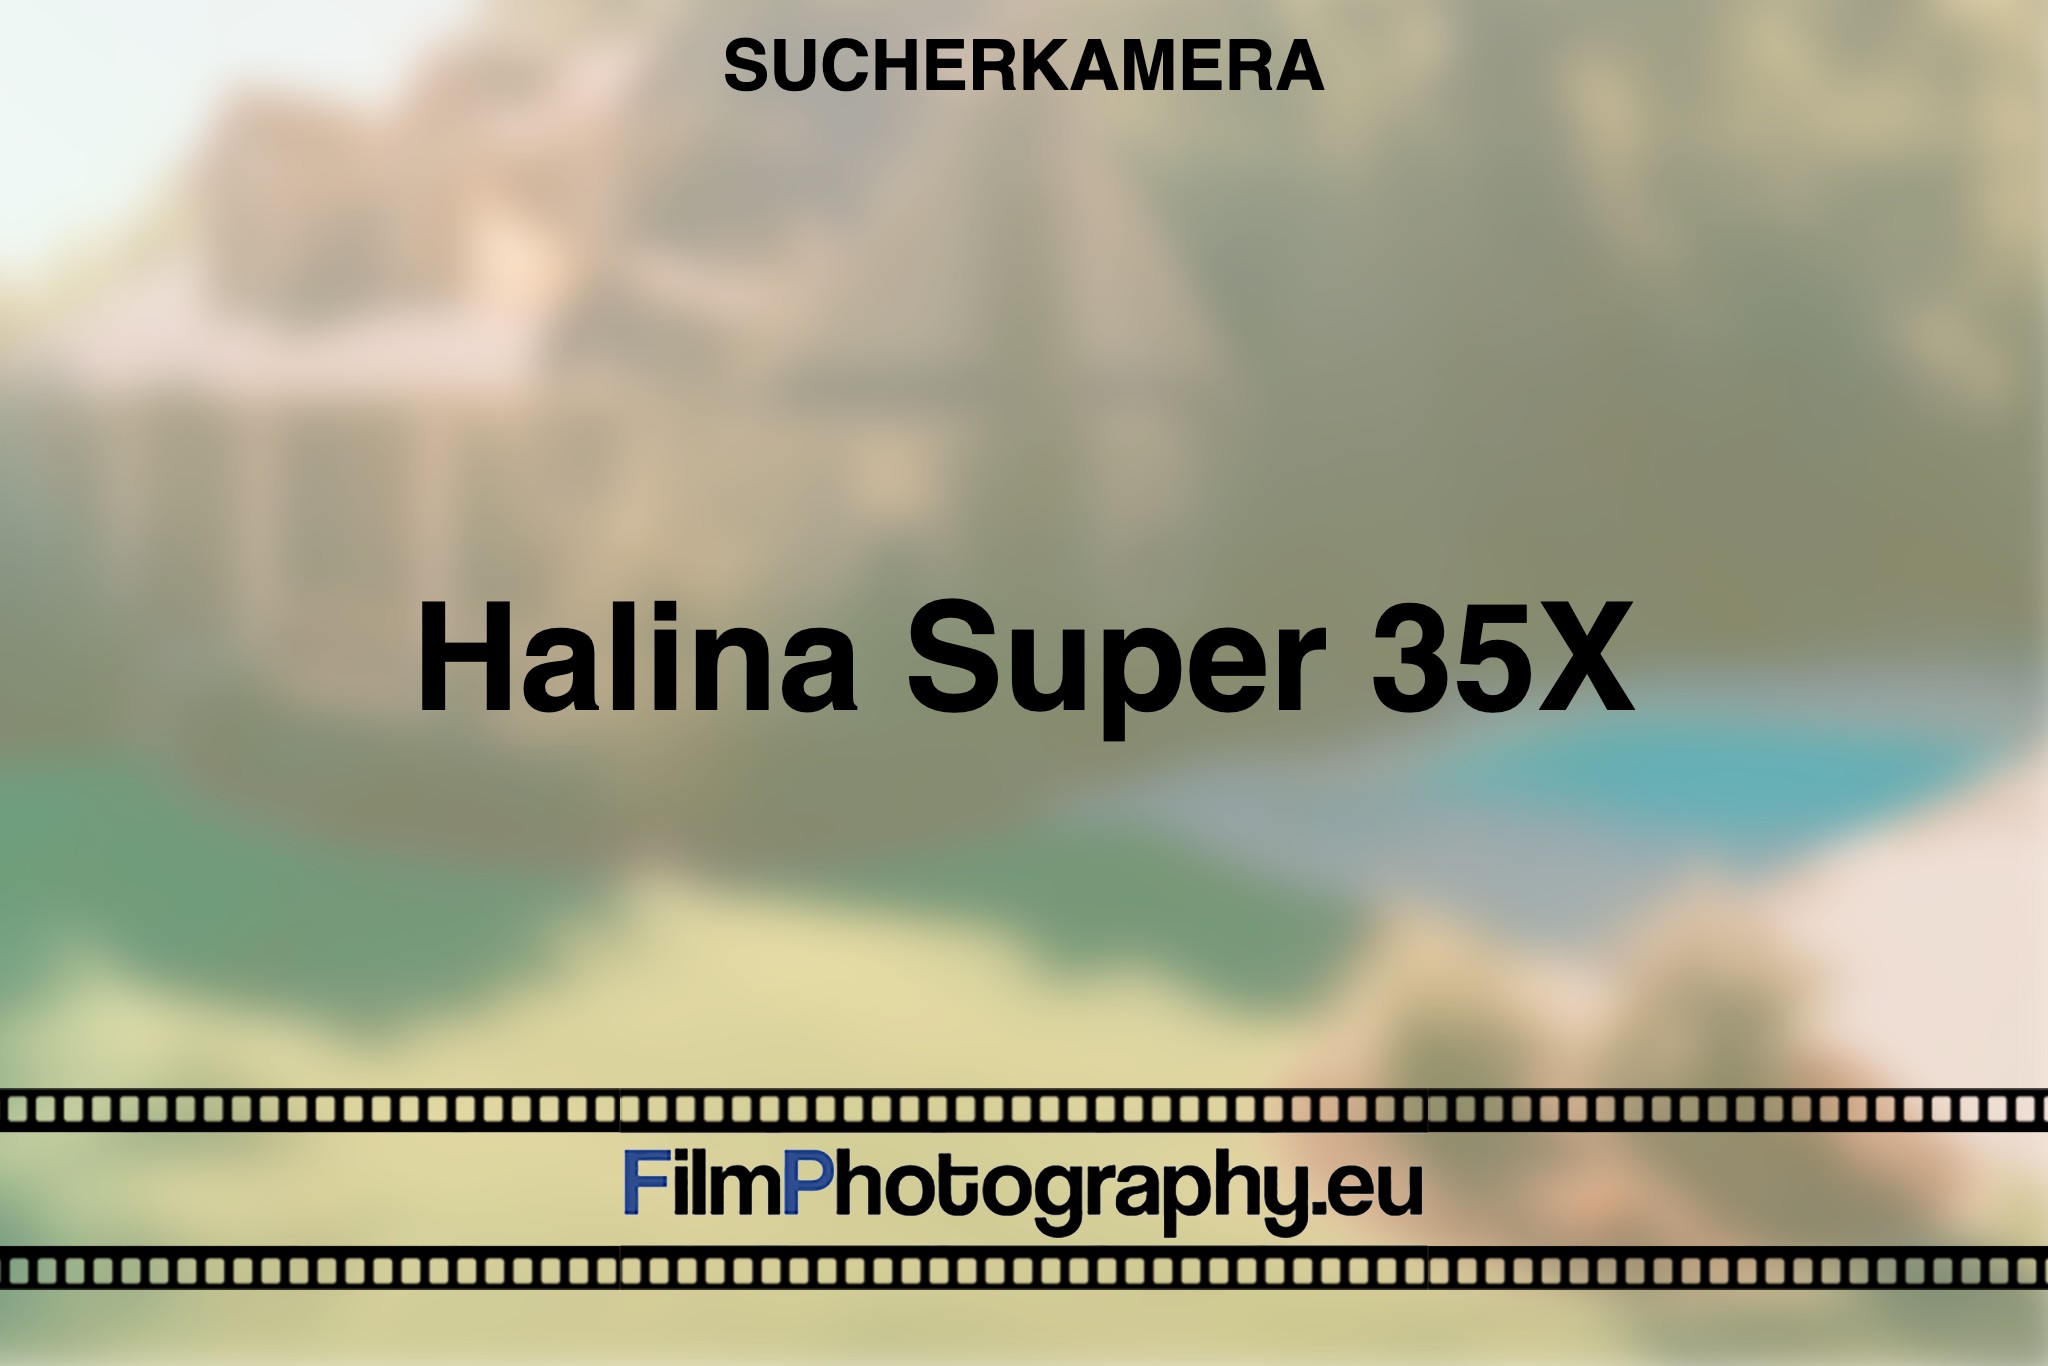 halina-super-35x-sucherkamera-bnv